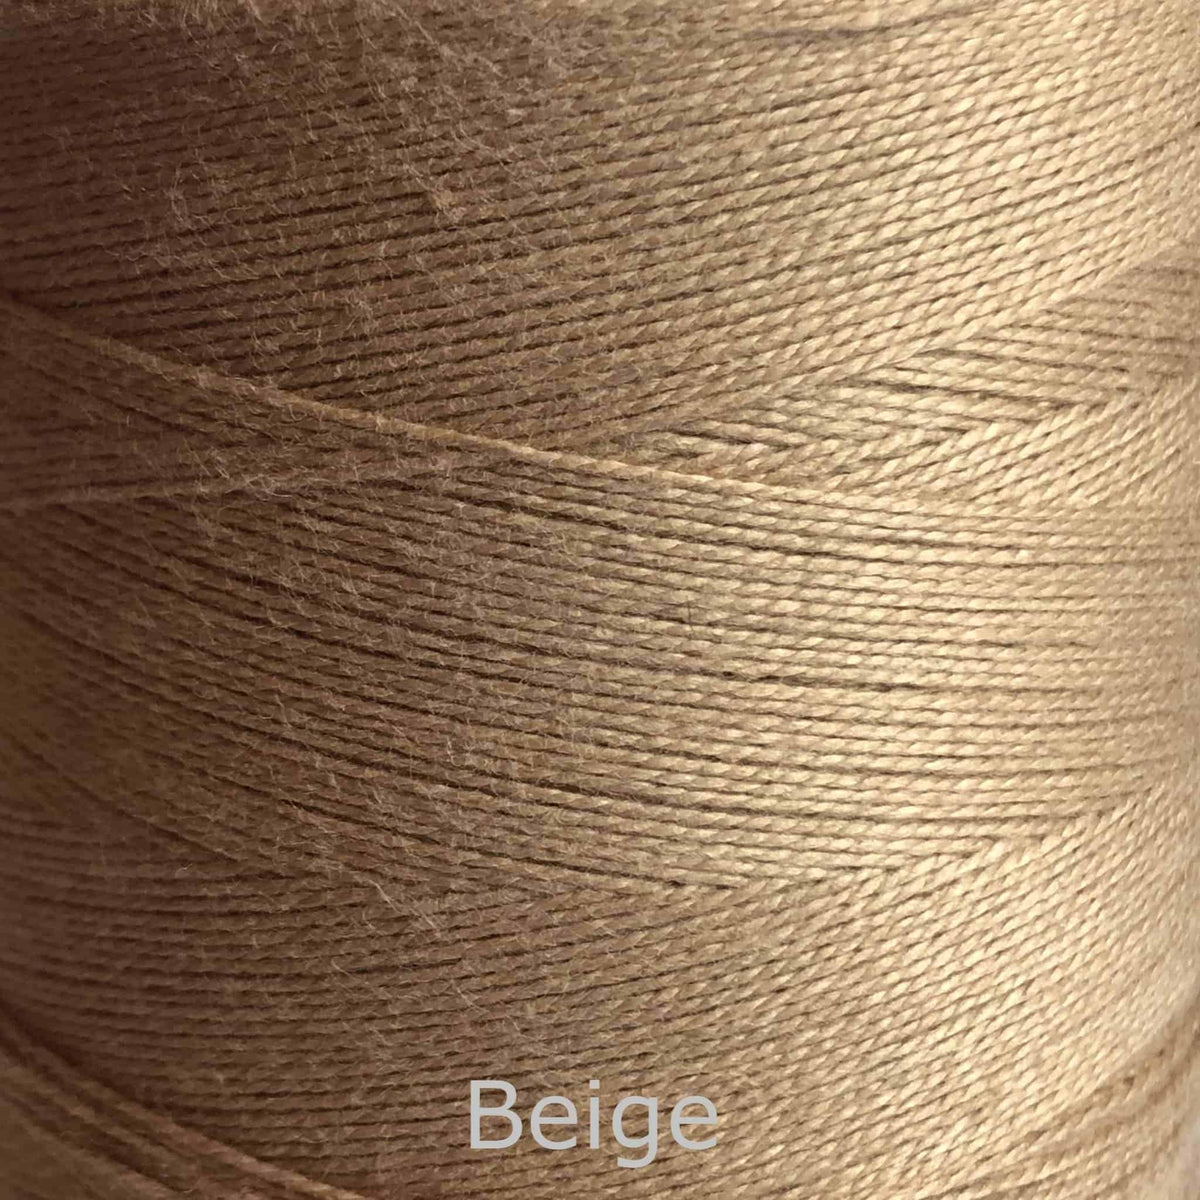 16/2 cotton weaving yarn beige